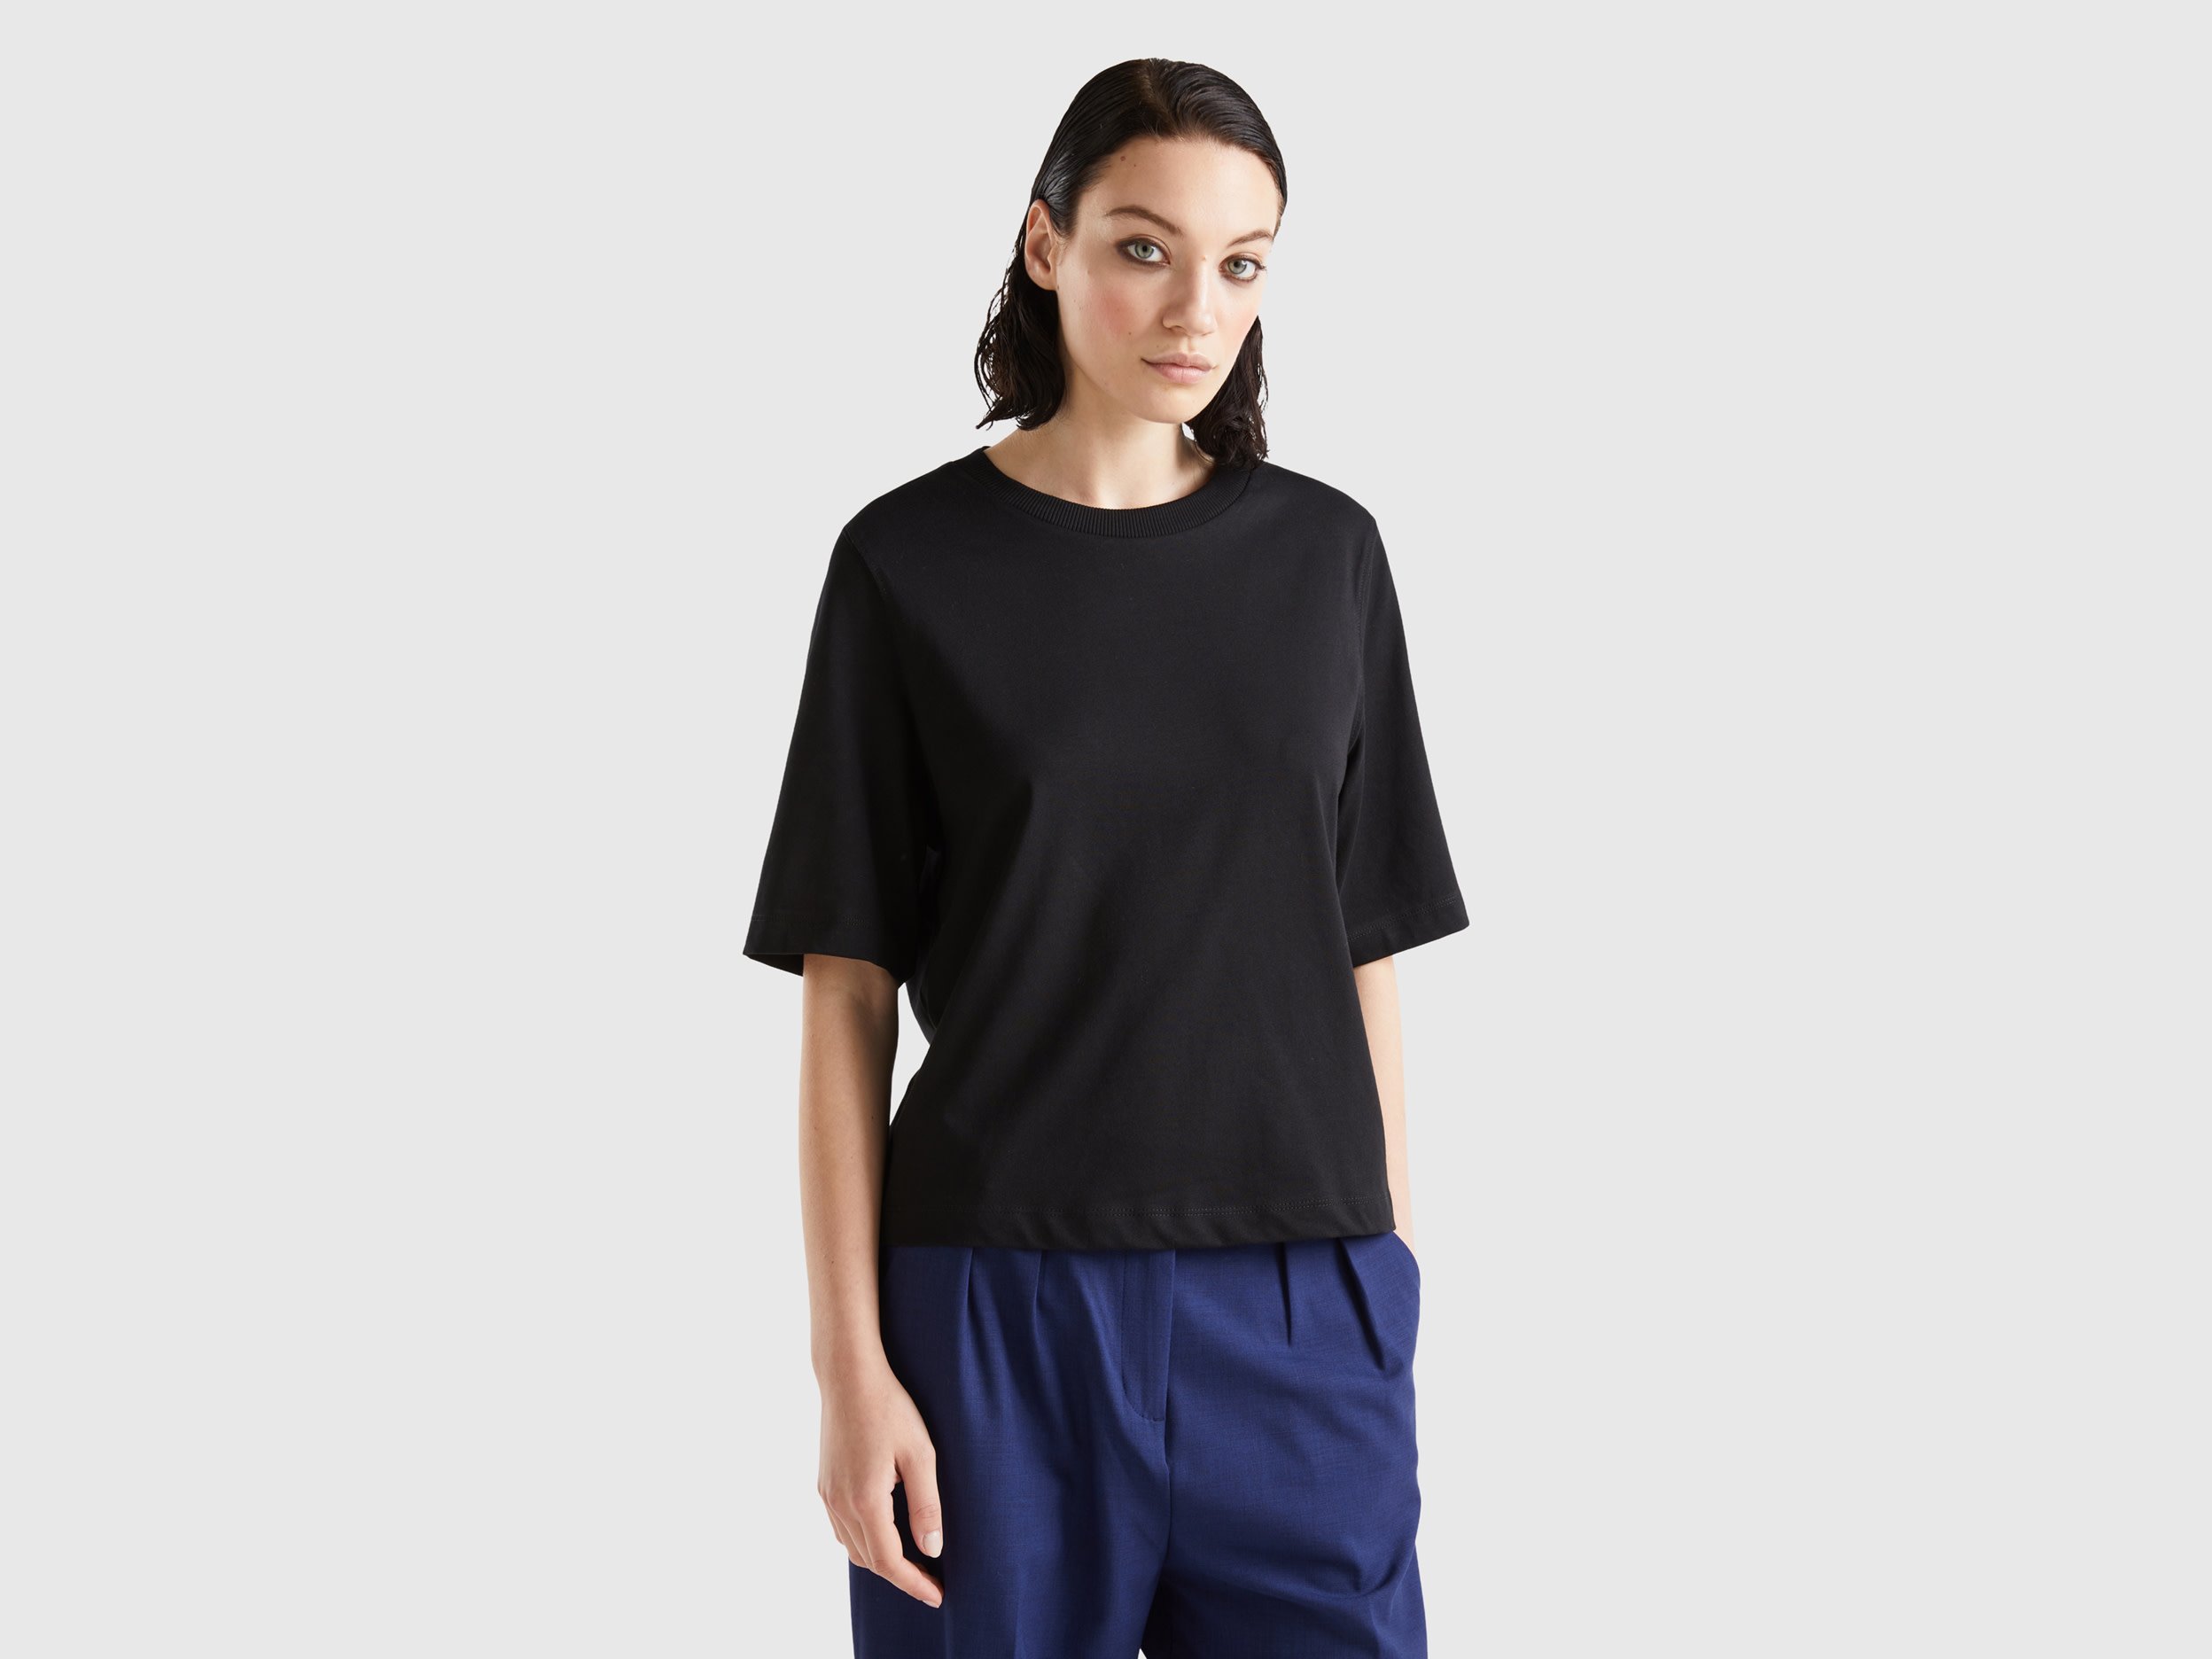 Benetton, 100% Cotton Boxy Fit T-shirt, size L, Black, Women